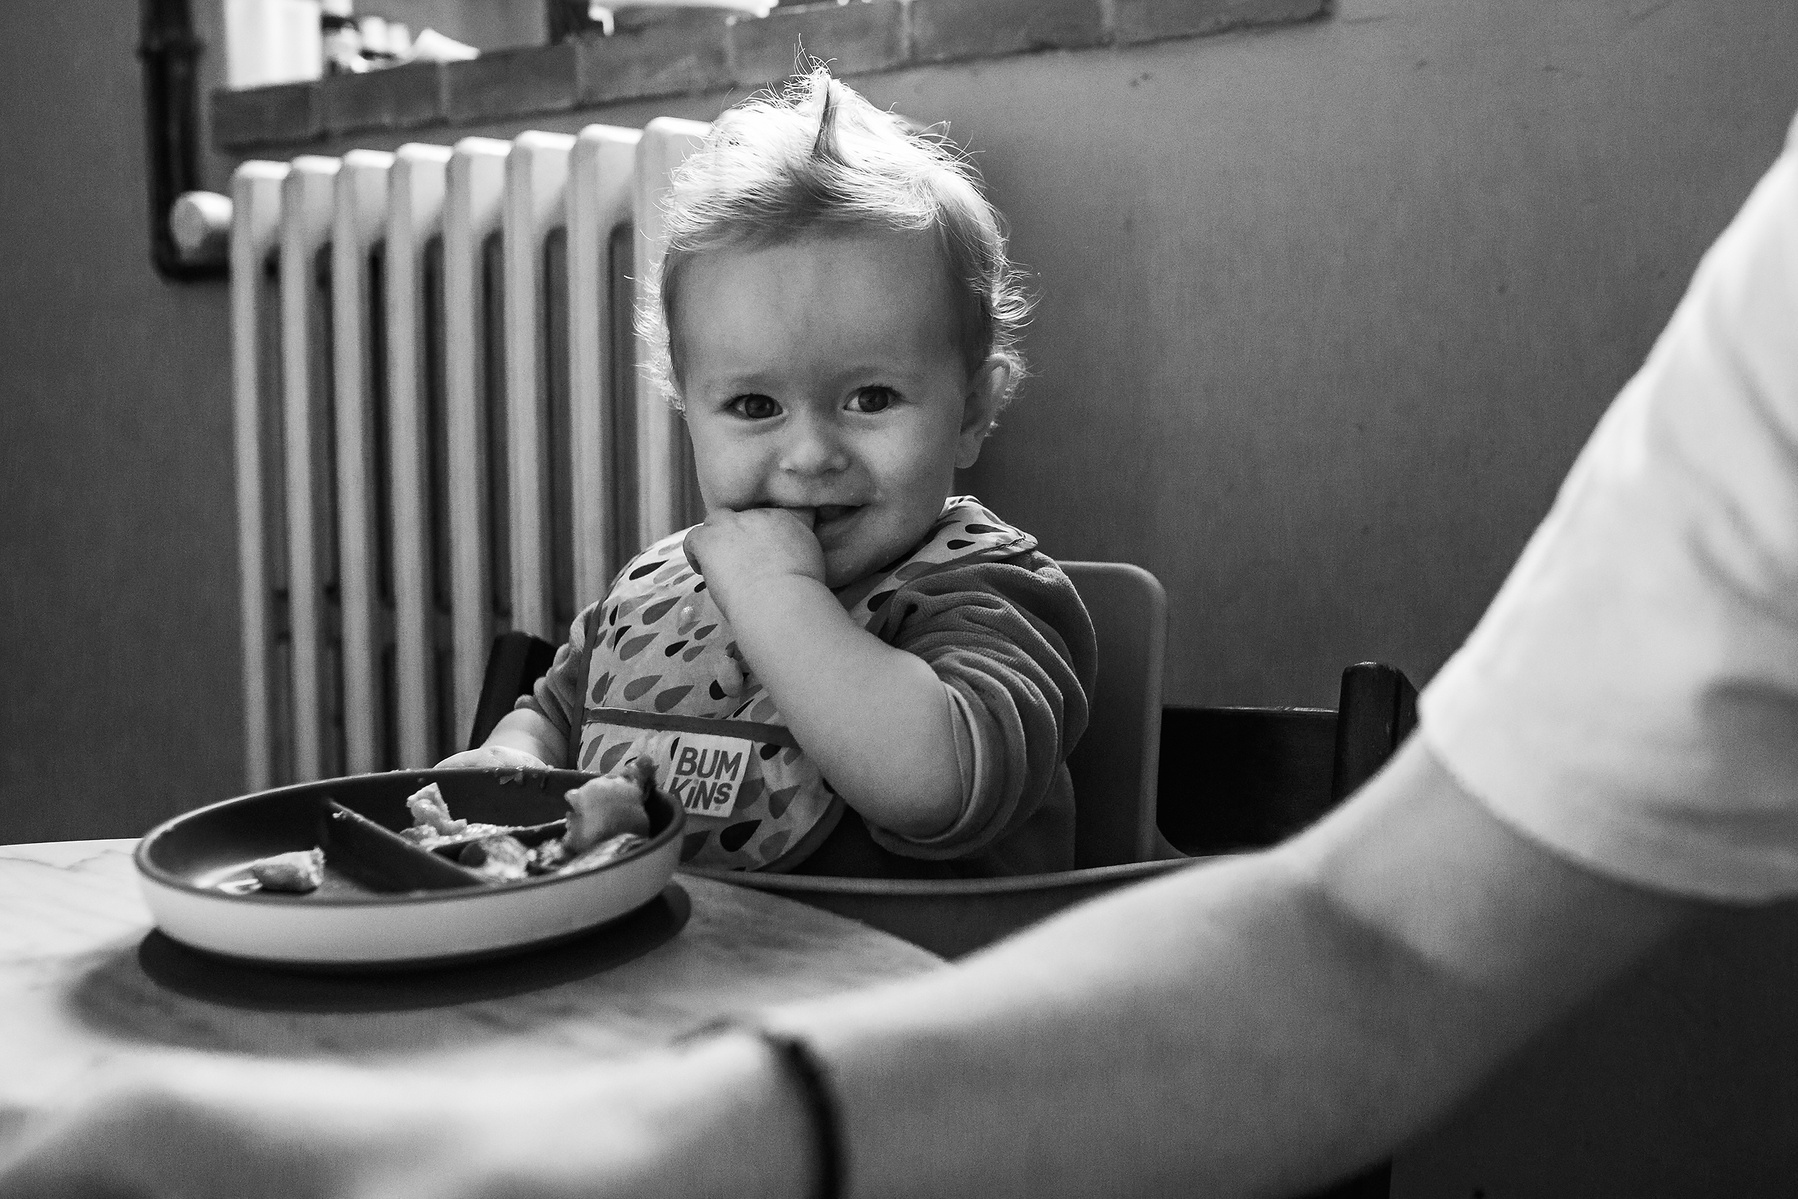  bebé comiendo en la mesa de la cocina, Manuela Franjou fotografia de familia